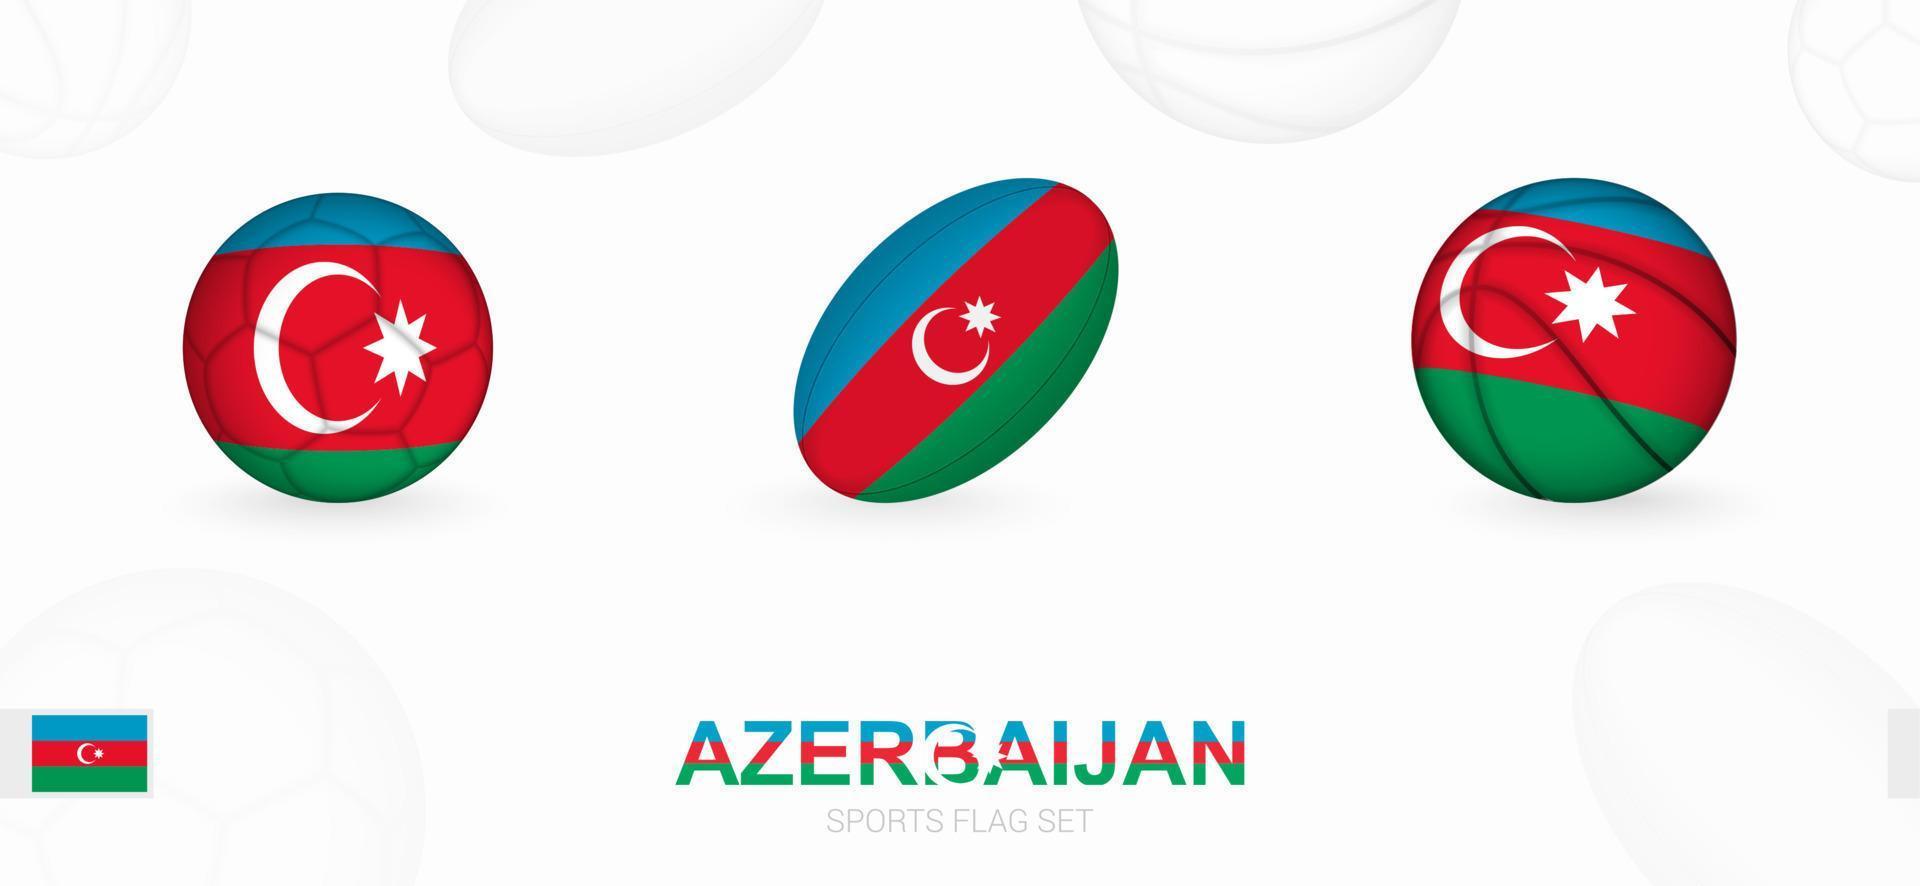 sport- pictogrammen voor Amerikaans voetbal, rugby en basketbal met de vlag van azerbeidzjan. vector